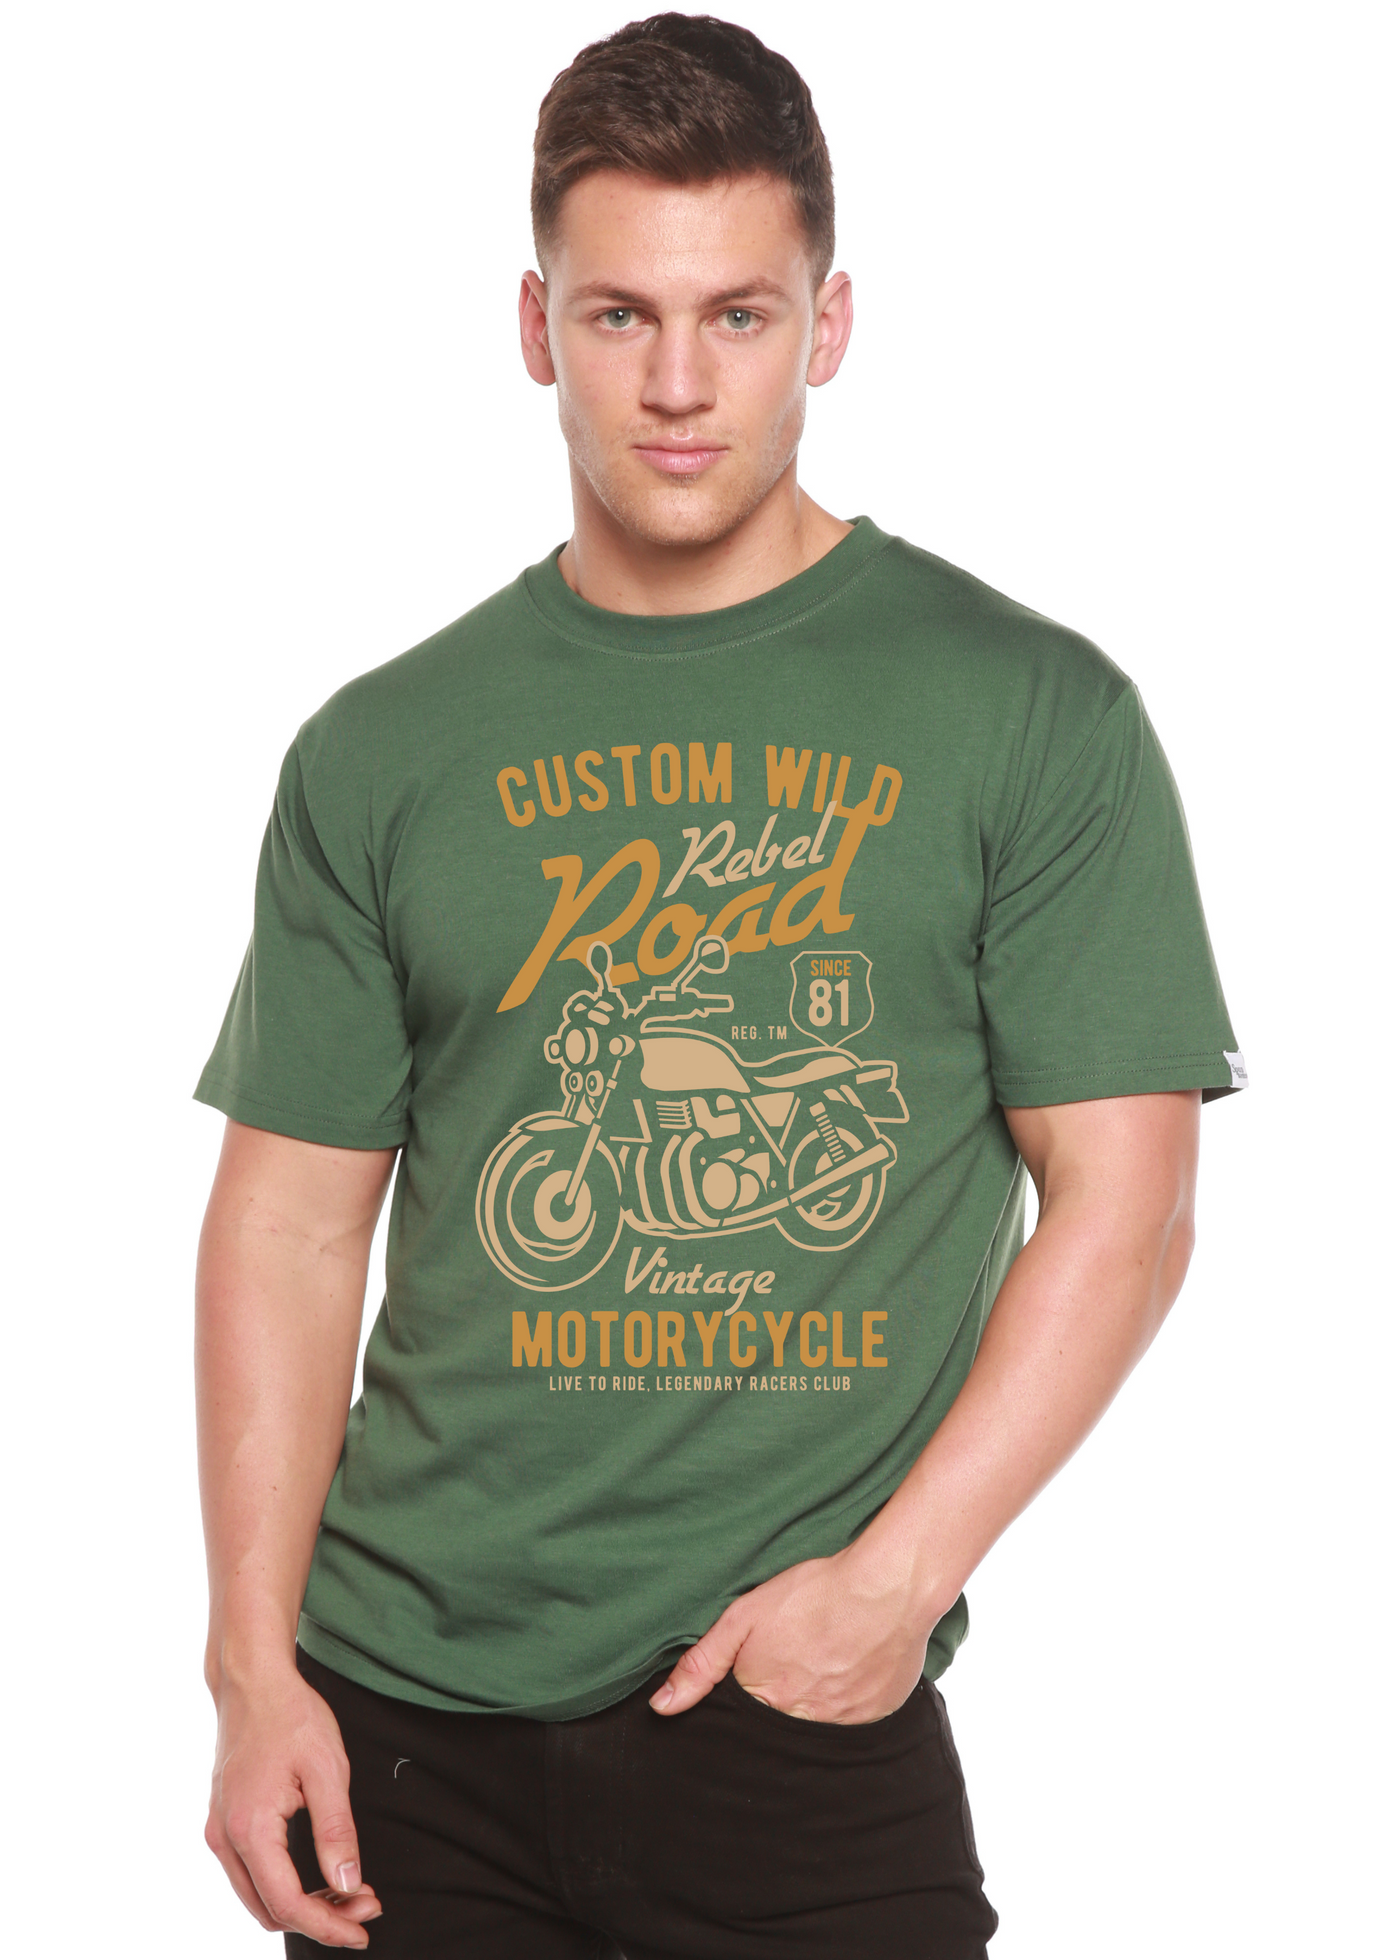 Custom Wild men's bamboo tshirt pine green